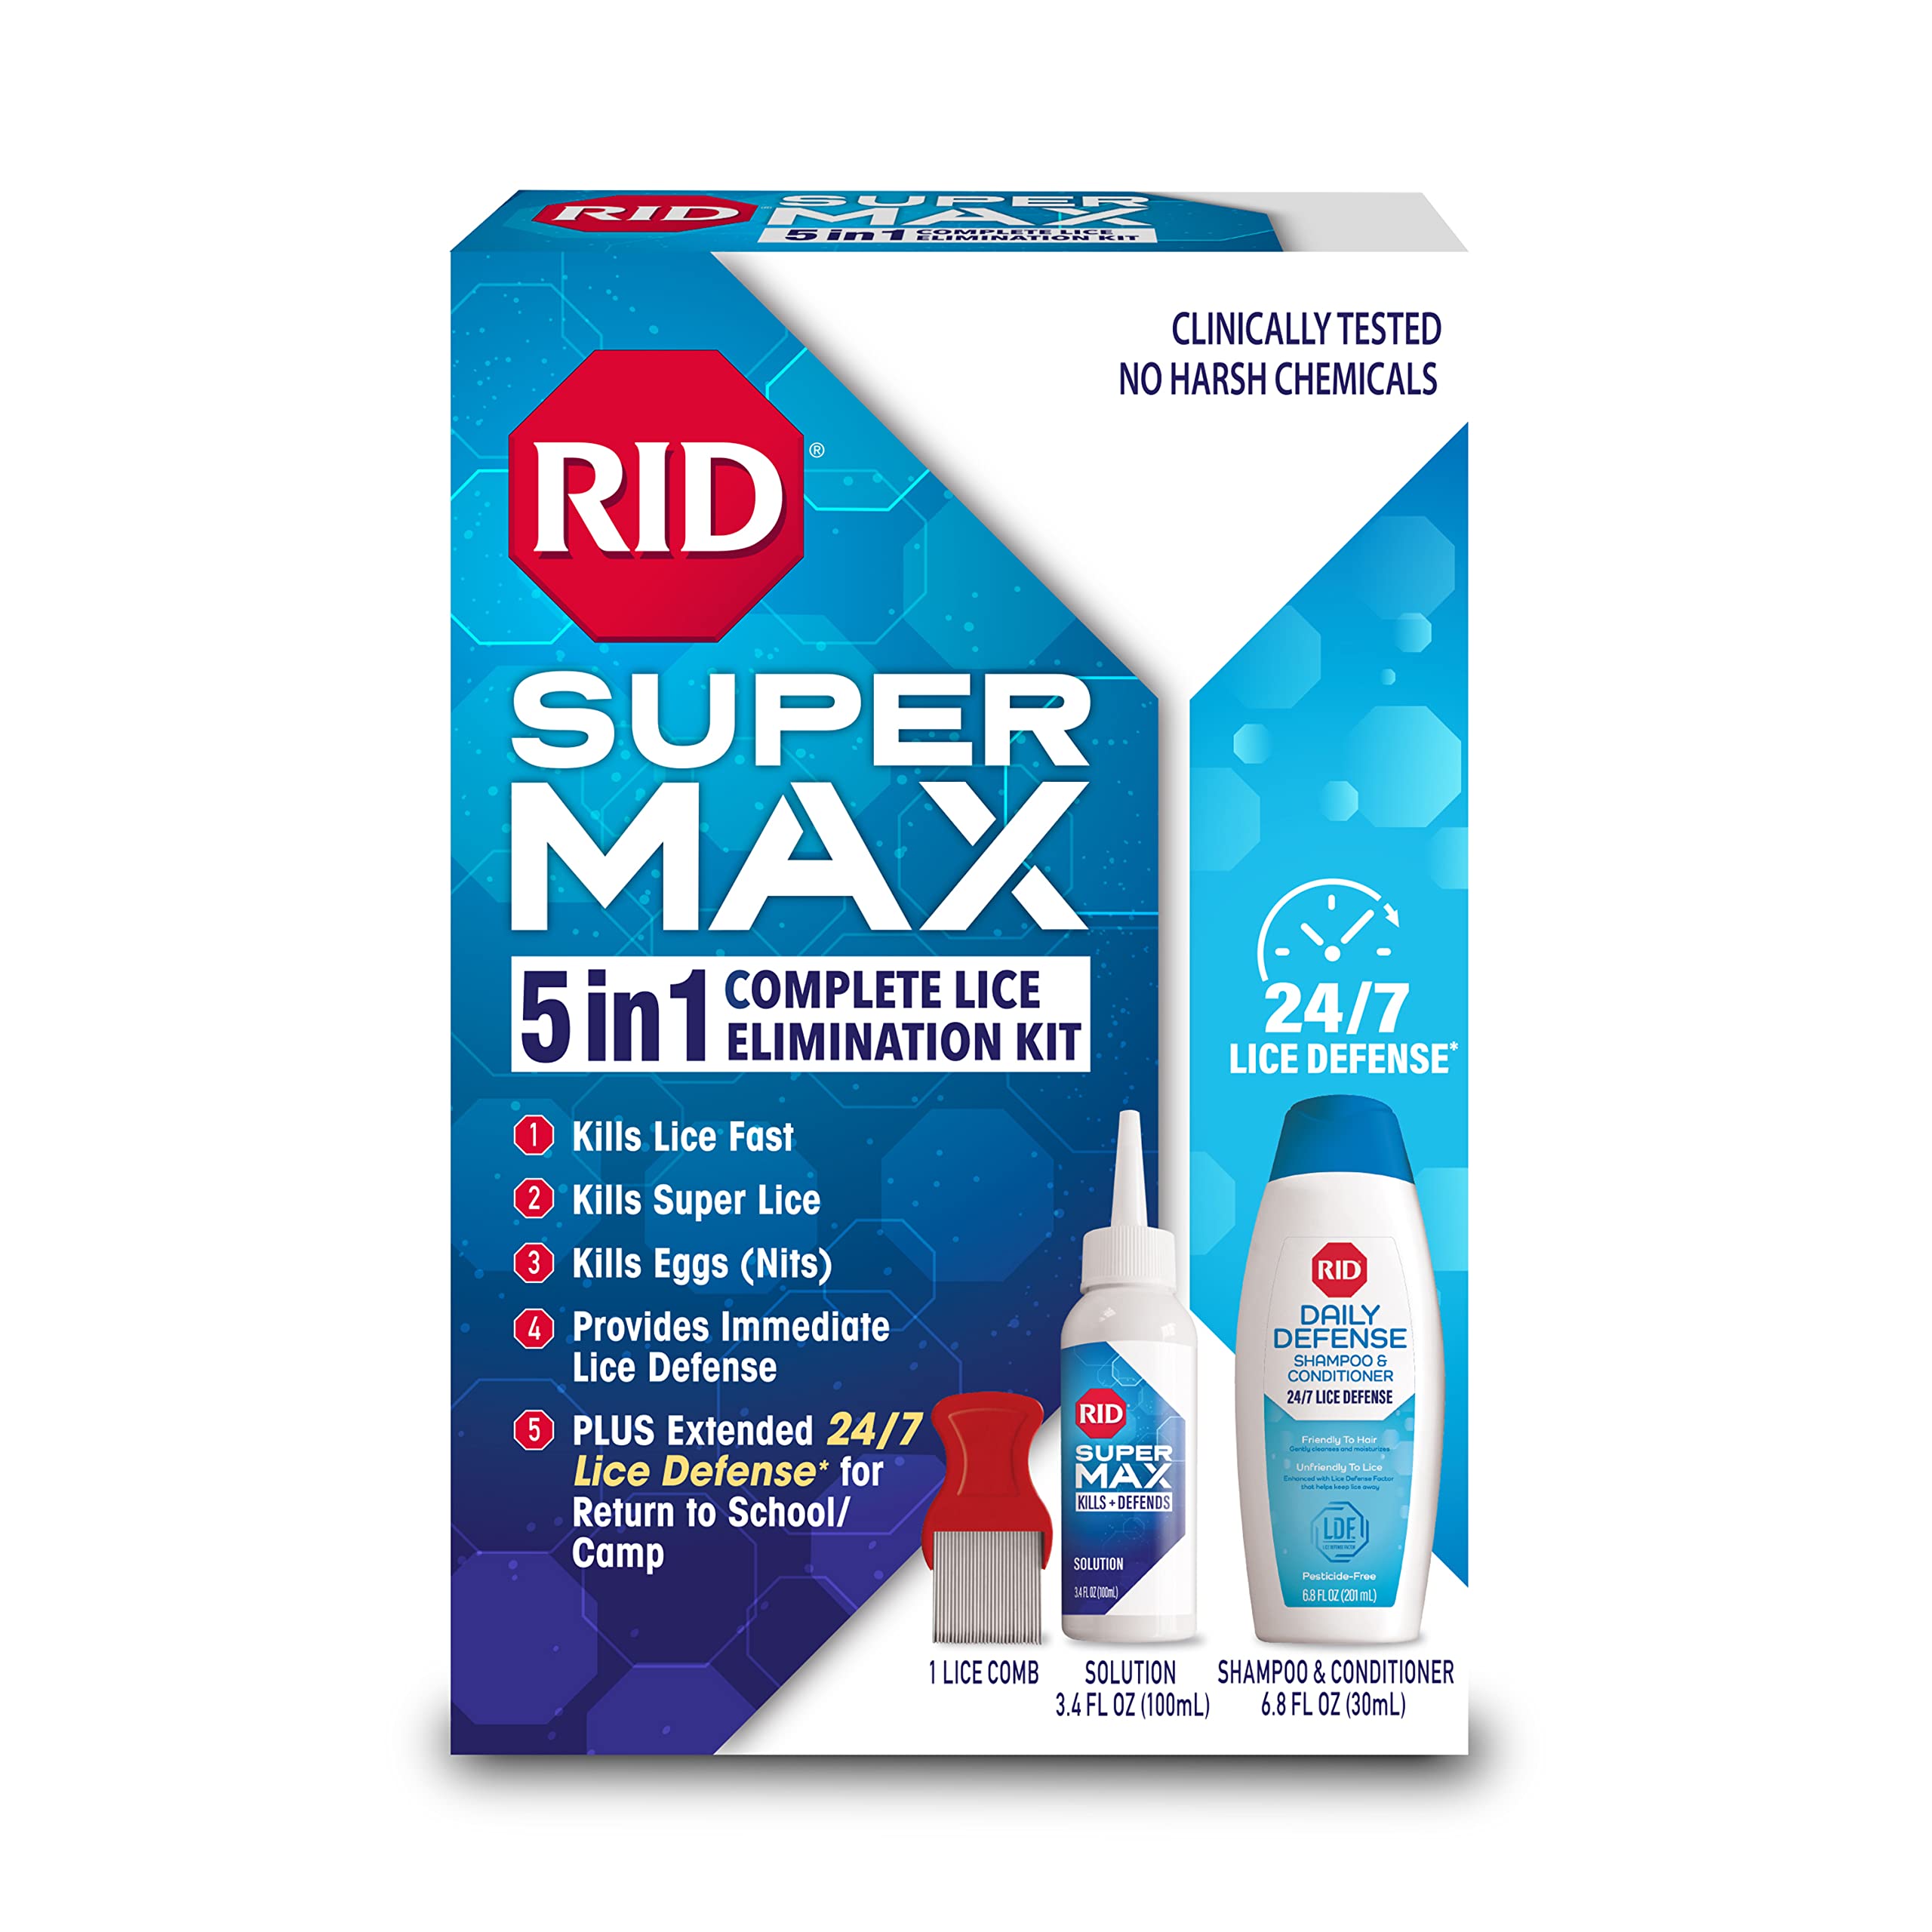 RID Super Max 5-in-1 Complete Lice Treatment Kit, Kills Super Lice & Eggs + 24/7 Lice Defense, Pesticide-Free, Includes Daily De